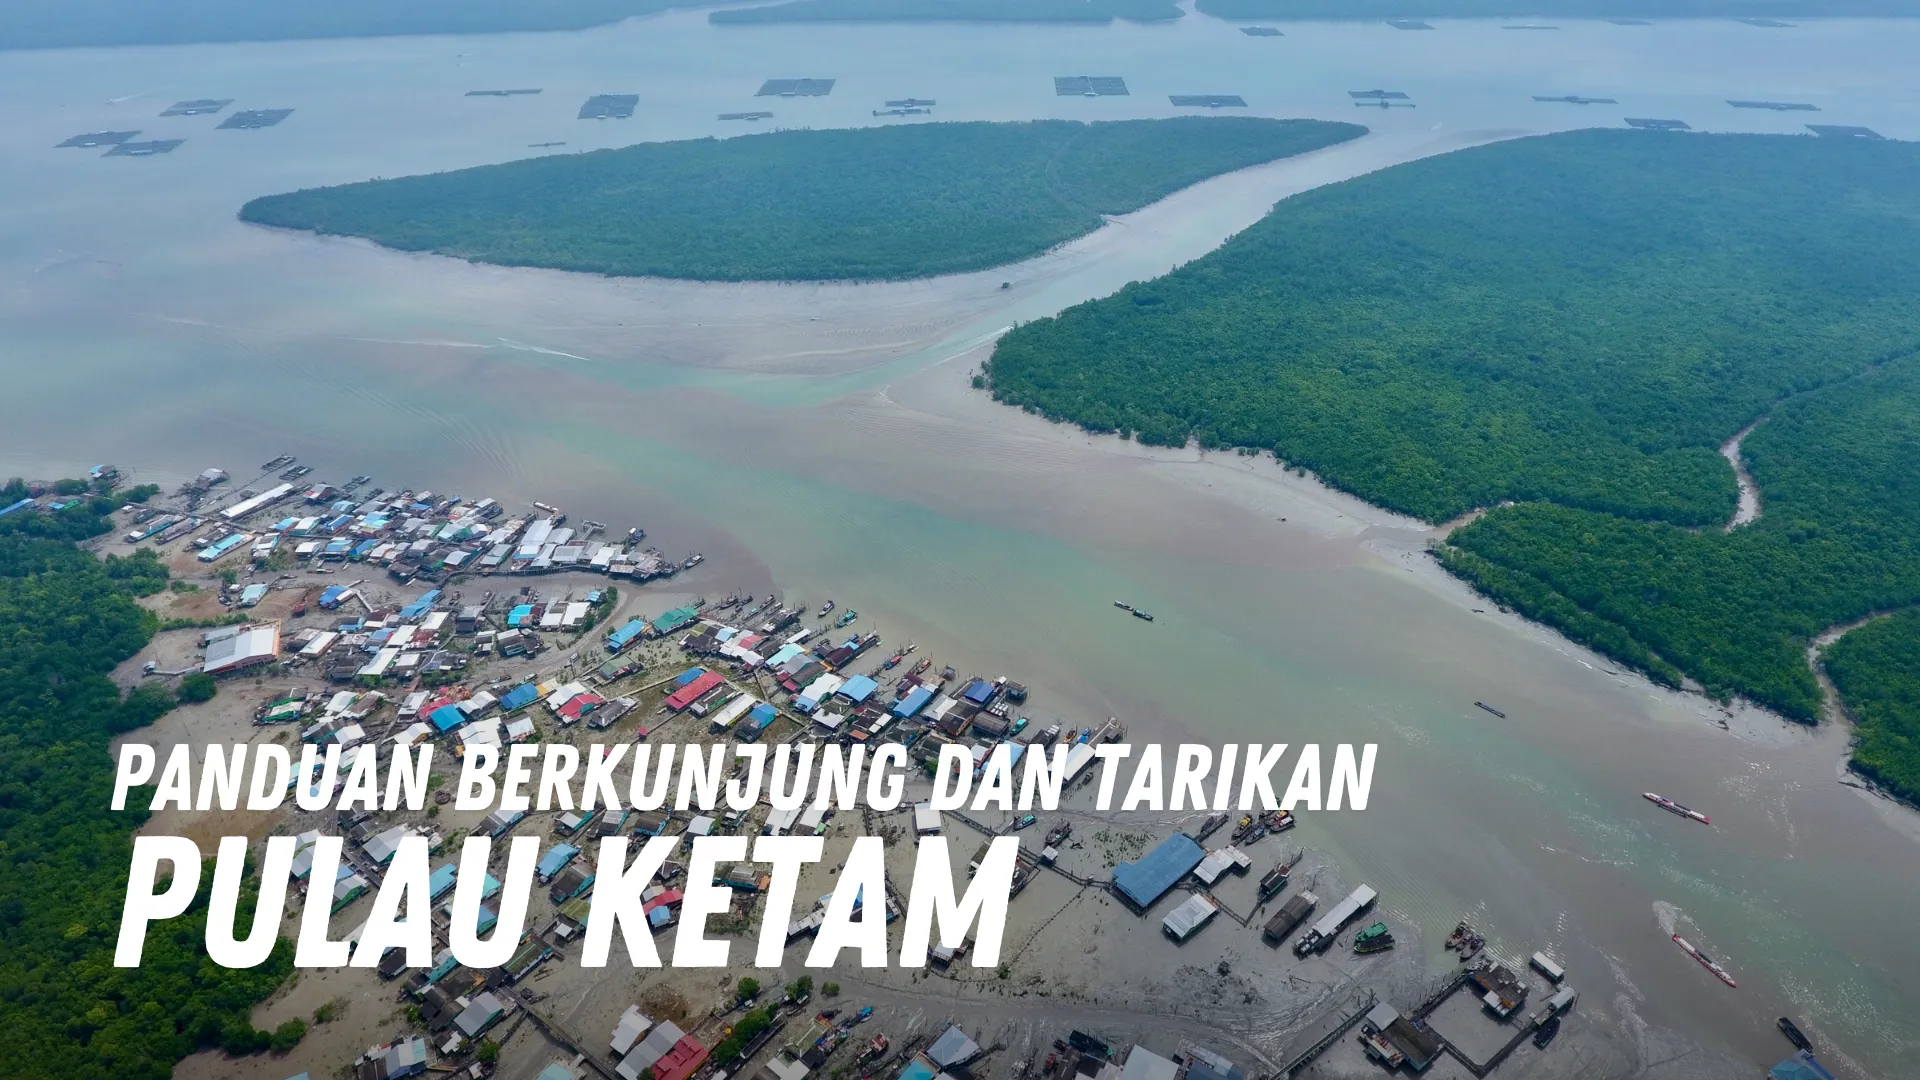 Review Pulau Ketam Malaysia